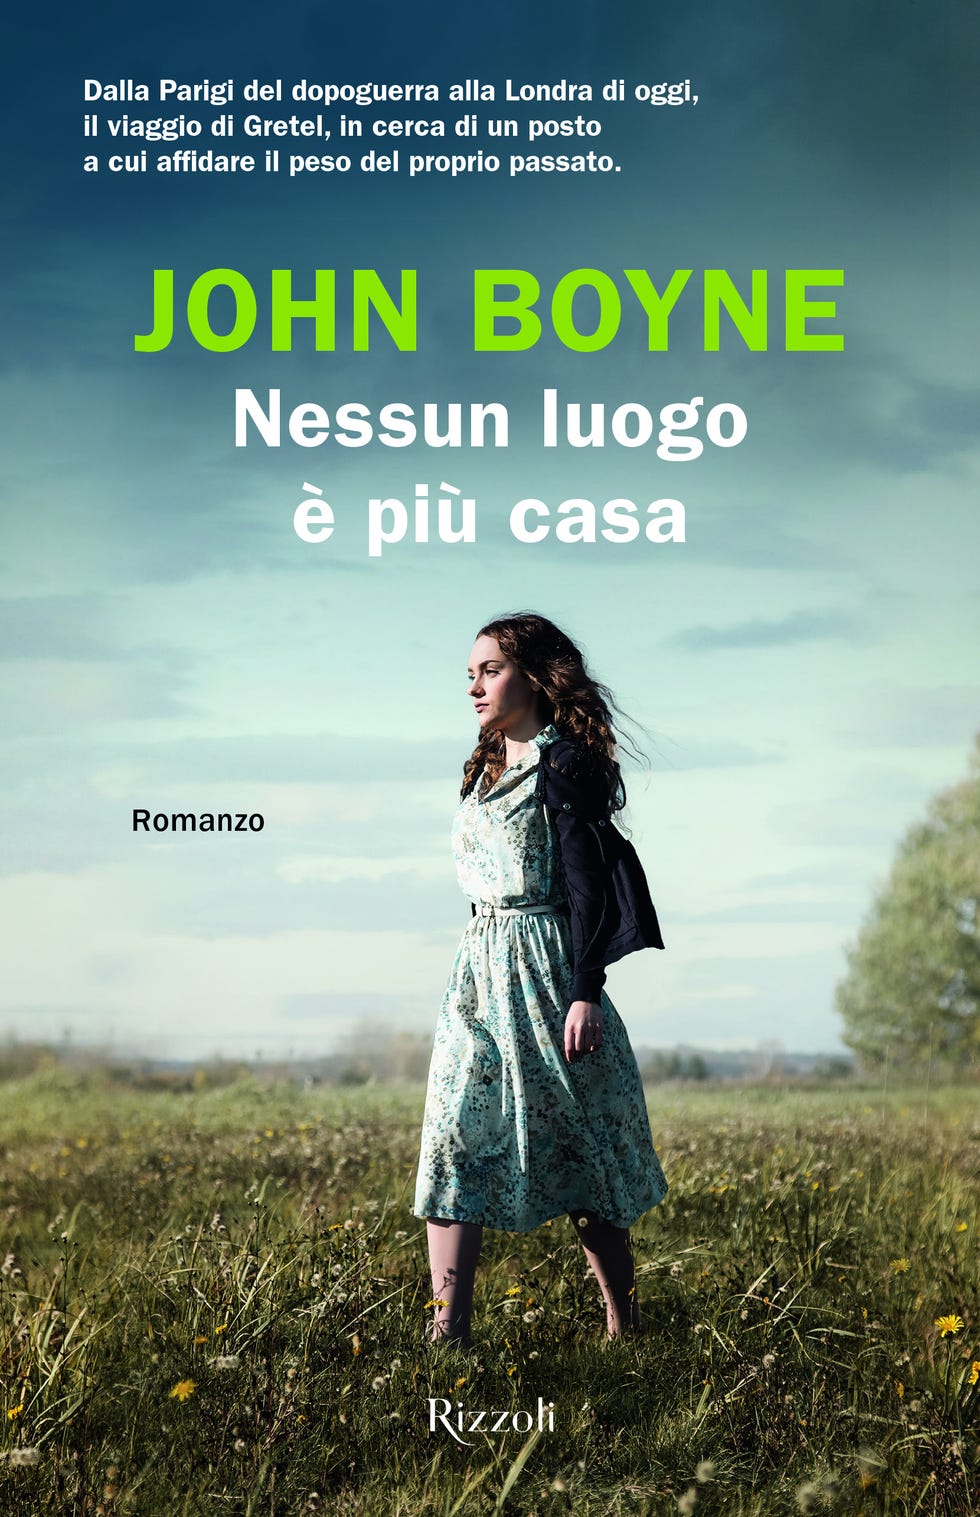 Il nuovo romanzo di John Boyne, Nessun luogo è più casa